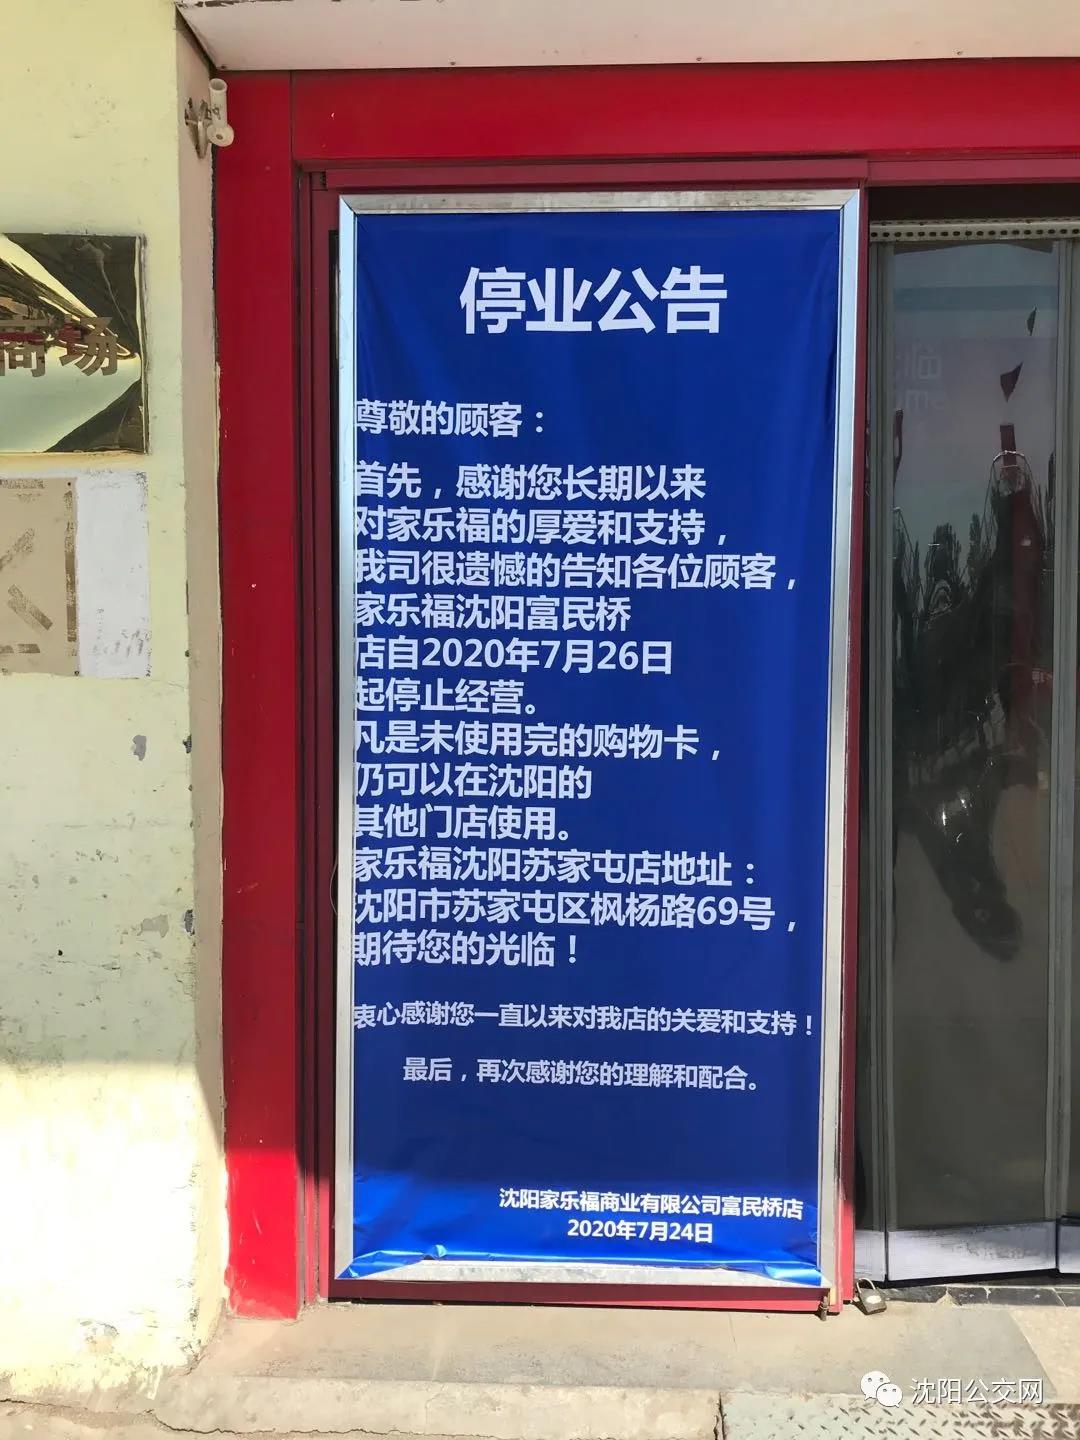 家乐福关闭富民桥店 下半年将在沈阳落地2家新店